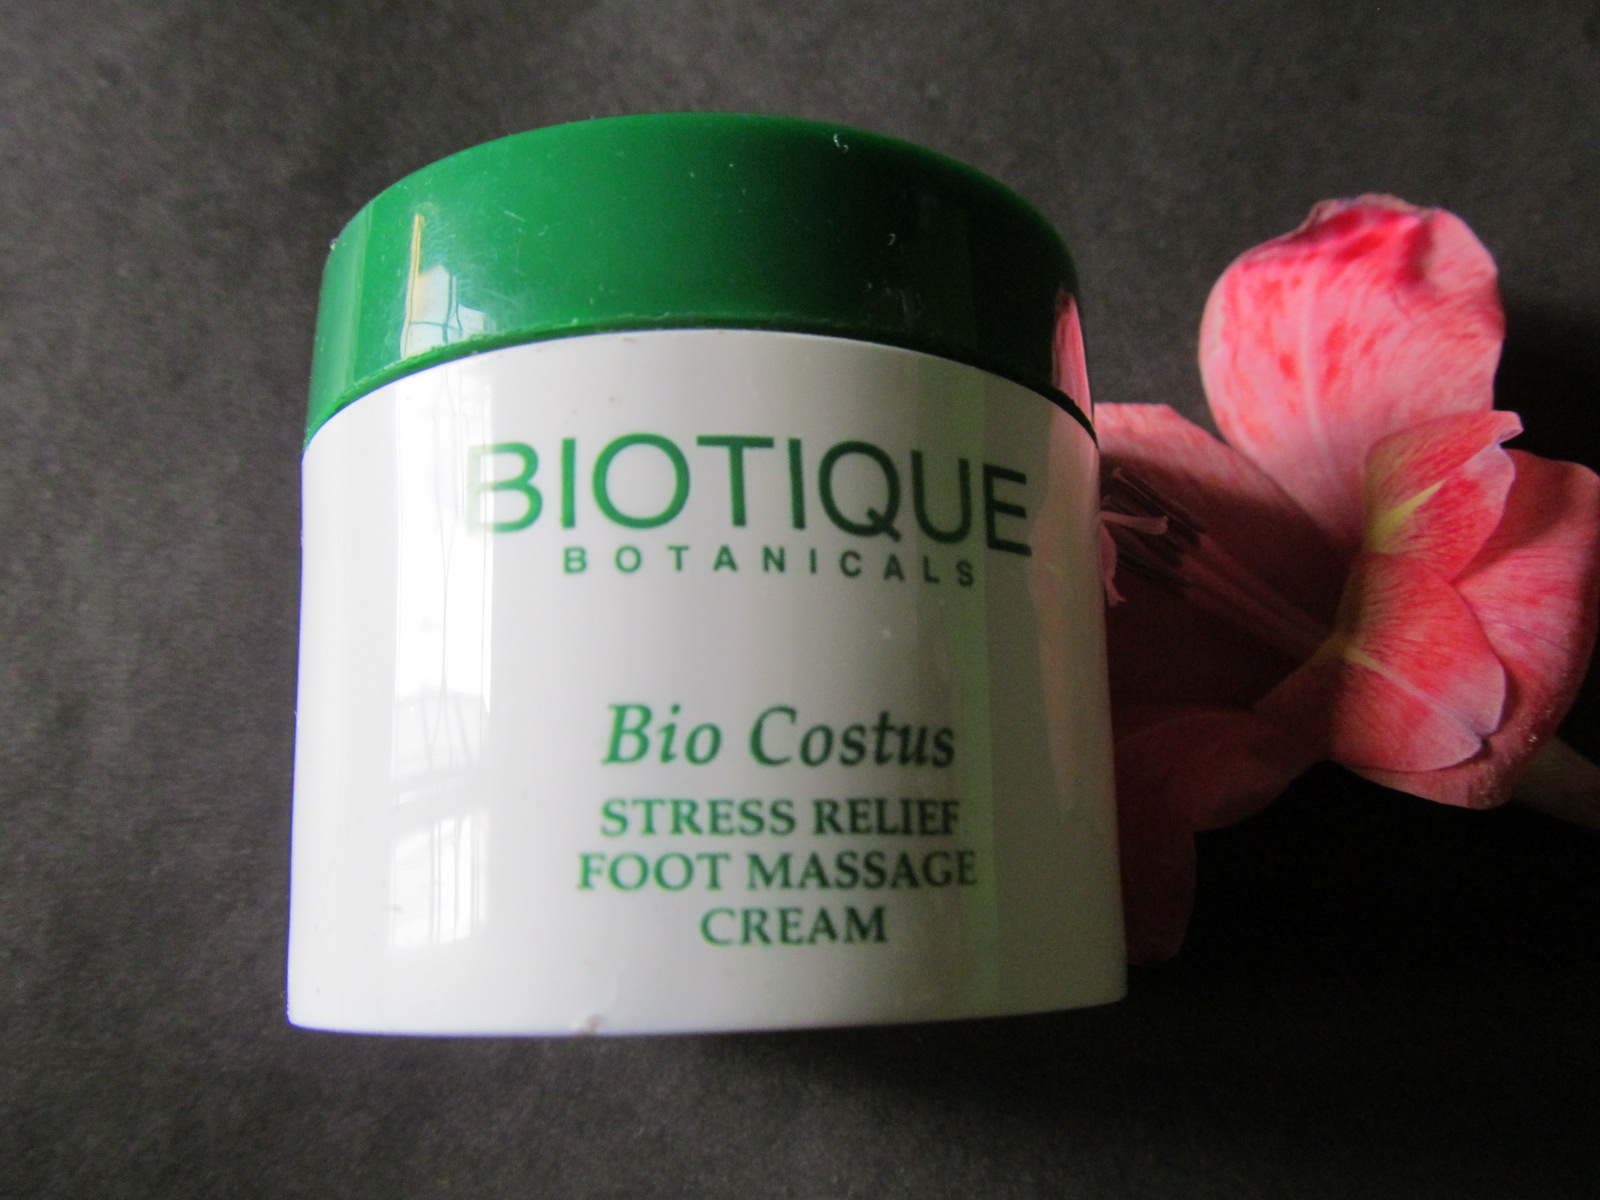 Biotique Bio Costus Foot Massage Cream Review Cosmetics Arena